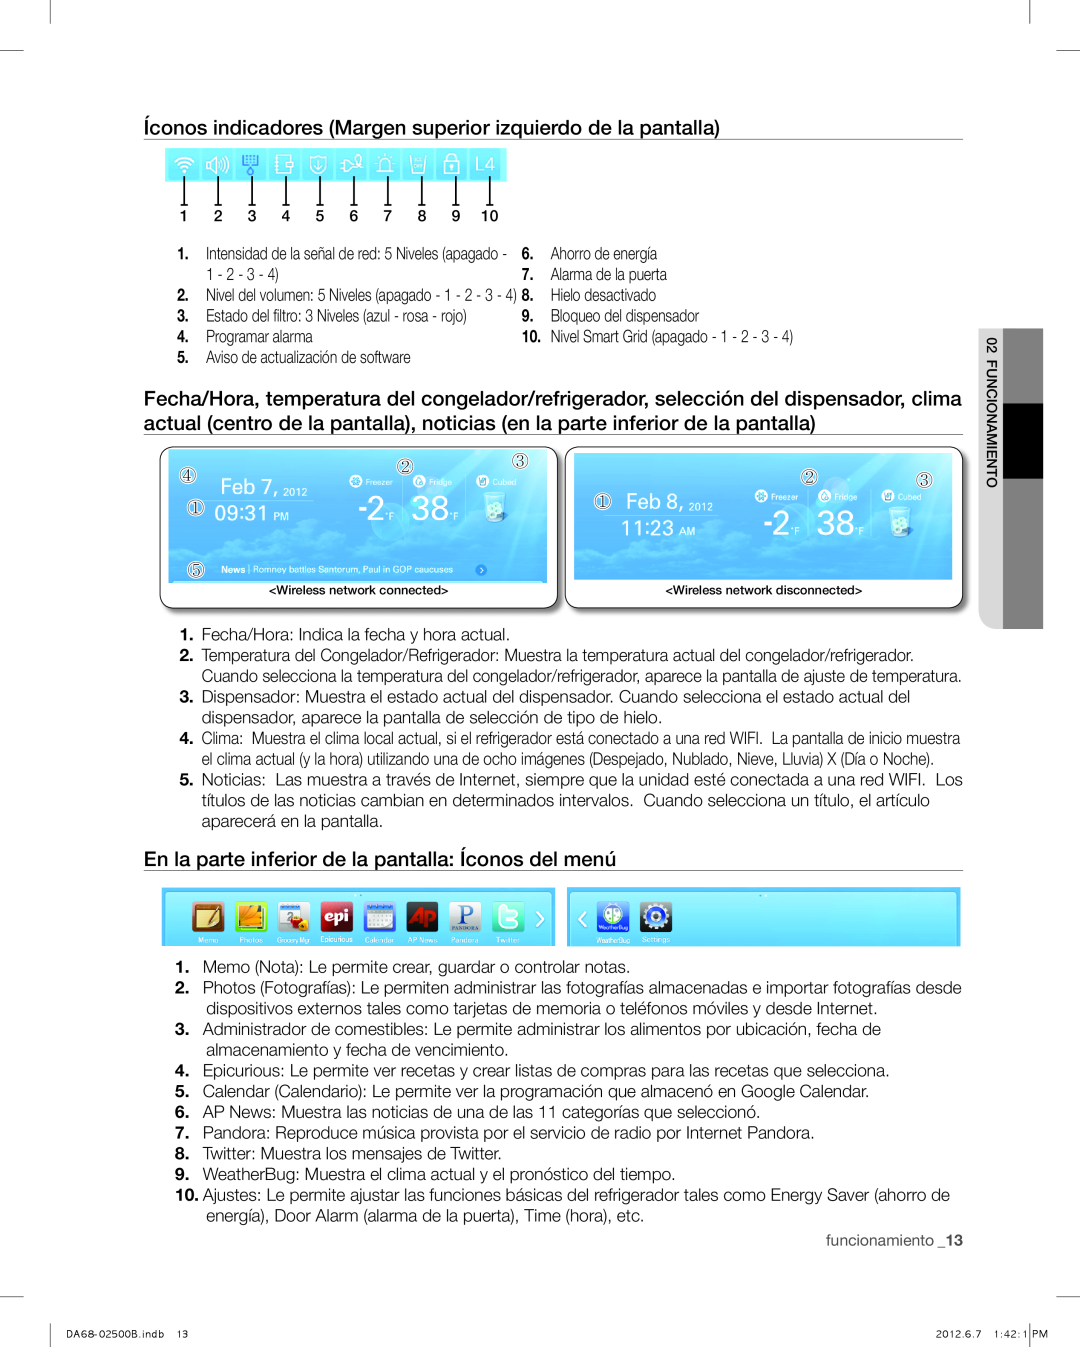 Samsung RSG309 Íconos indicadores Margen superior izquierdo de la pantalla, Bloqueo del dispensador, Programar alarma 